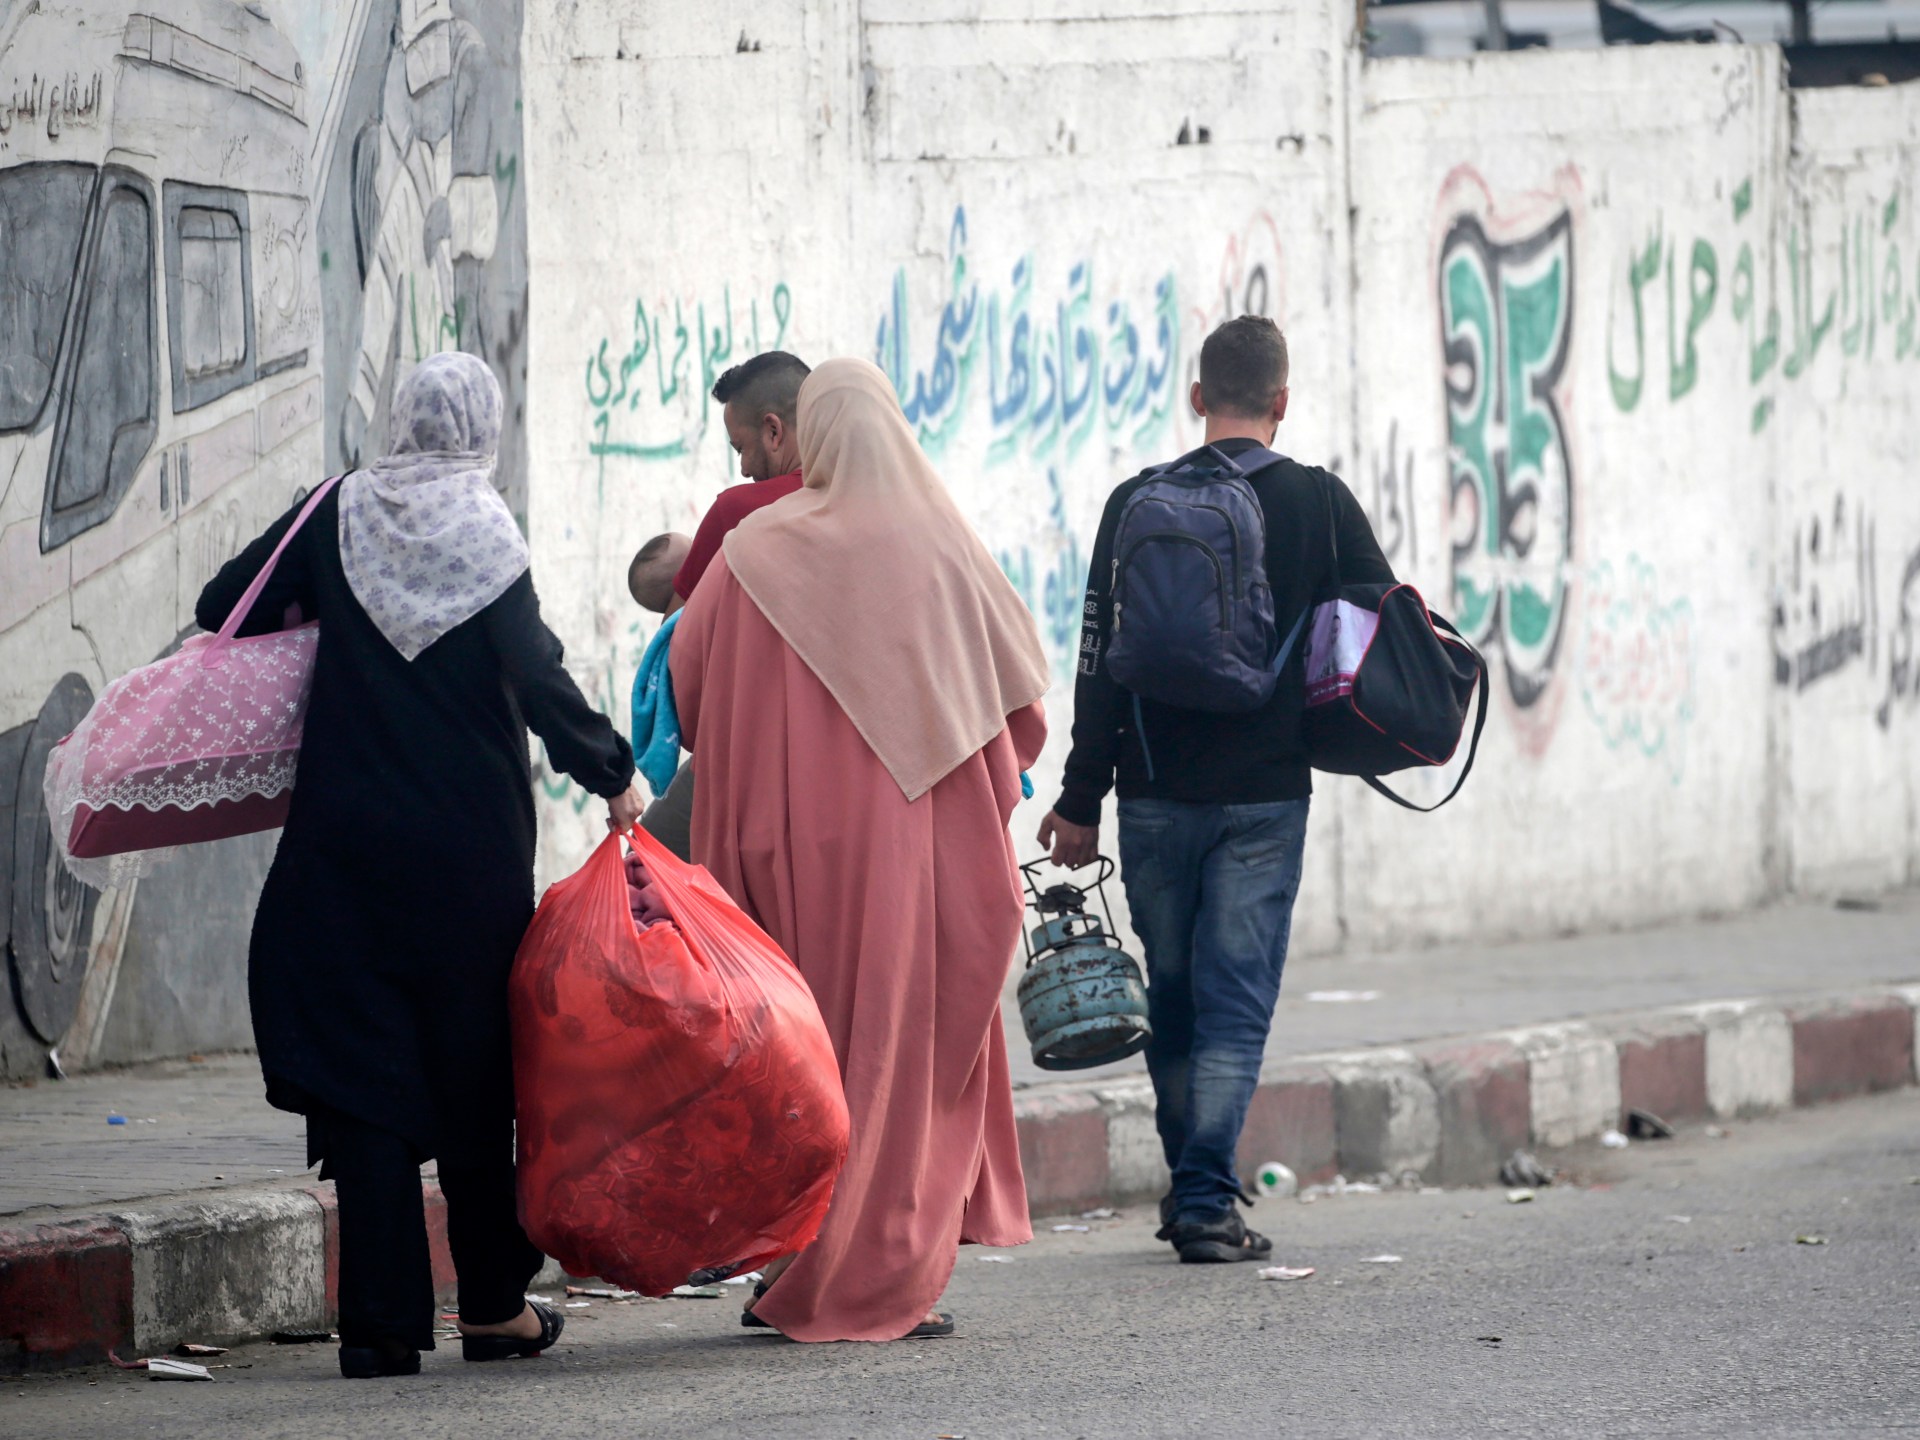 الأمم المتحدة: إسرائيل أبلغتنا بضرورة انتقال 1.1 مليون من سكان شمالي قطاع غزة | أخبار – البوكس نيوز